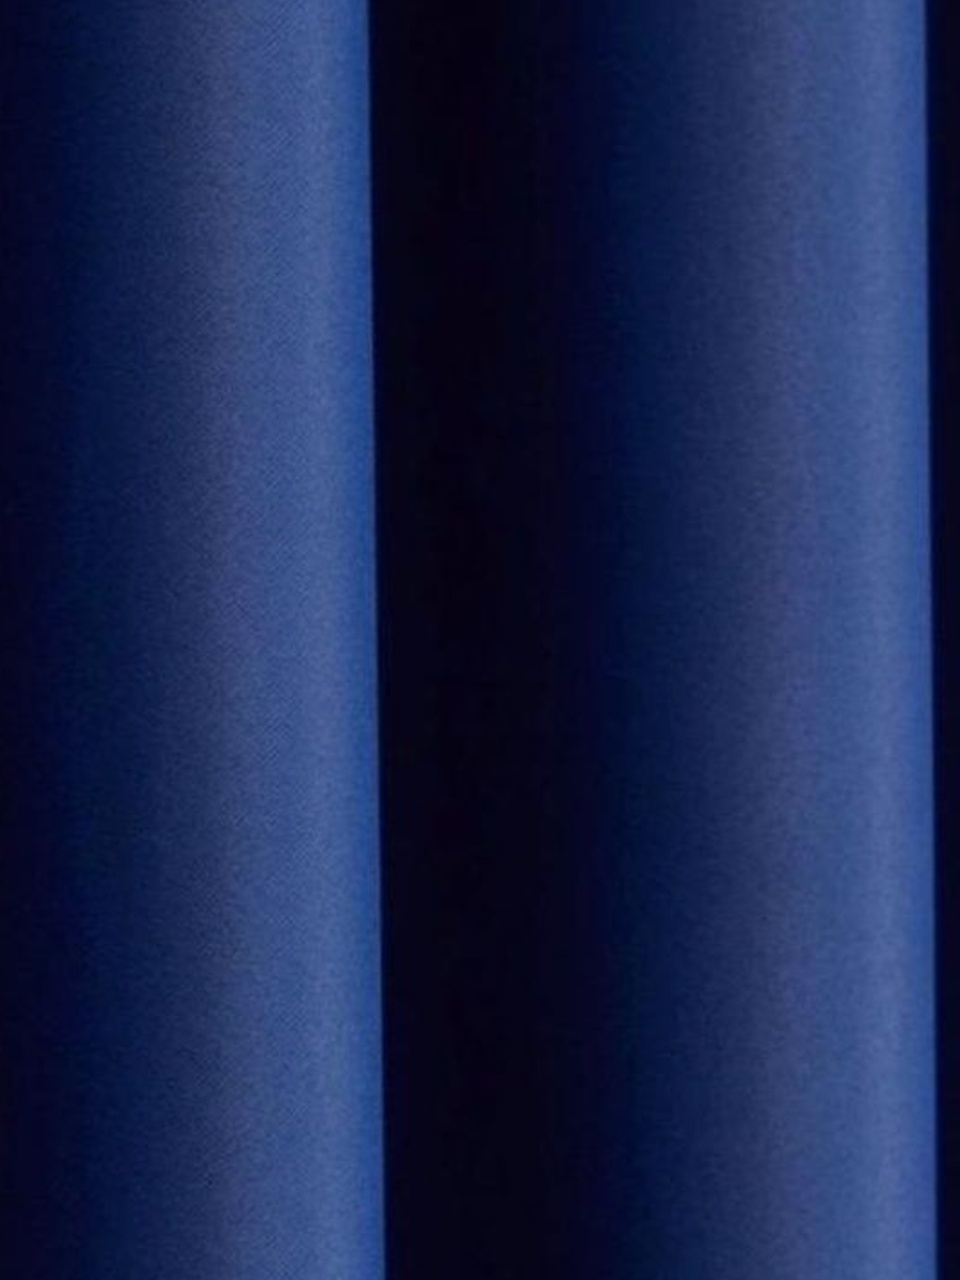 Портьеры блекаут синие - 650 ₽, заказать онлайн.